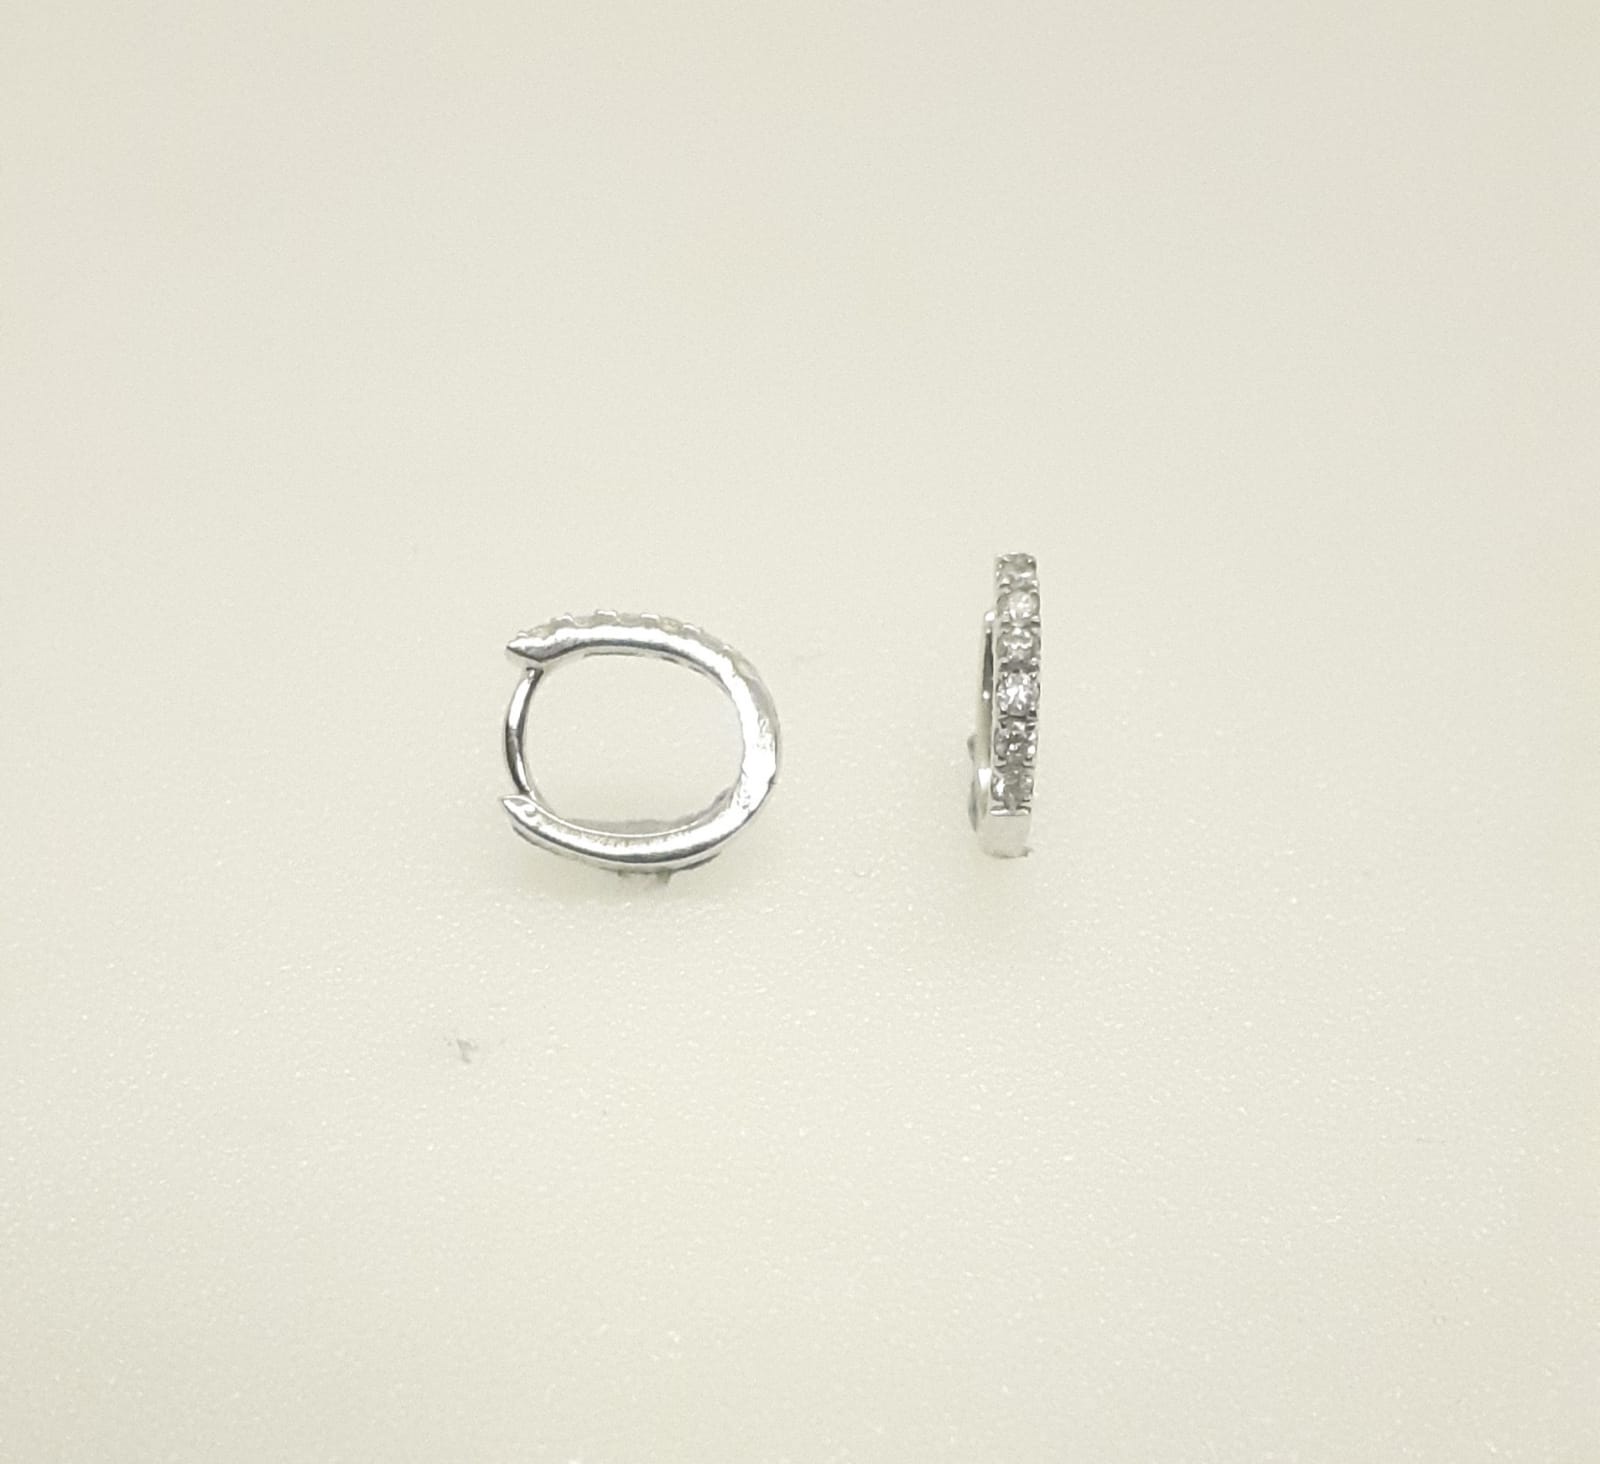 Sensi joyas alta joyería Granada plata compromiso PENDIENTES ORO 18K BRILLANTES  0,10 CTS 6x6,6 mm